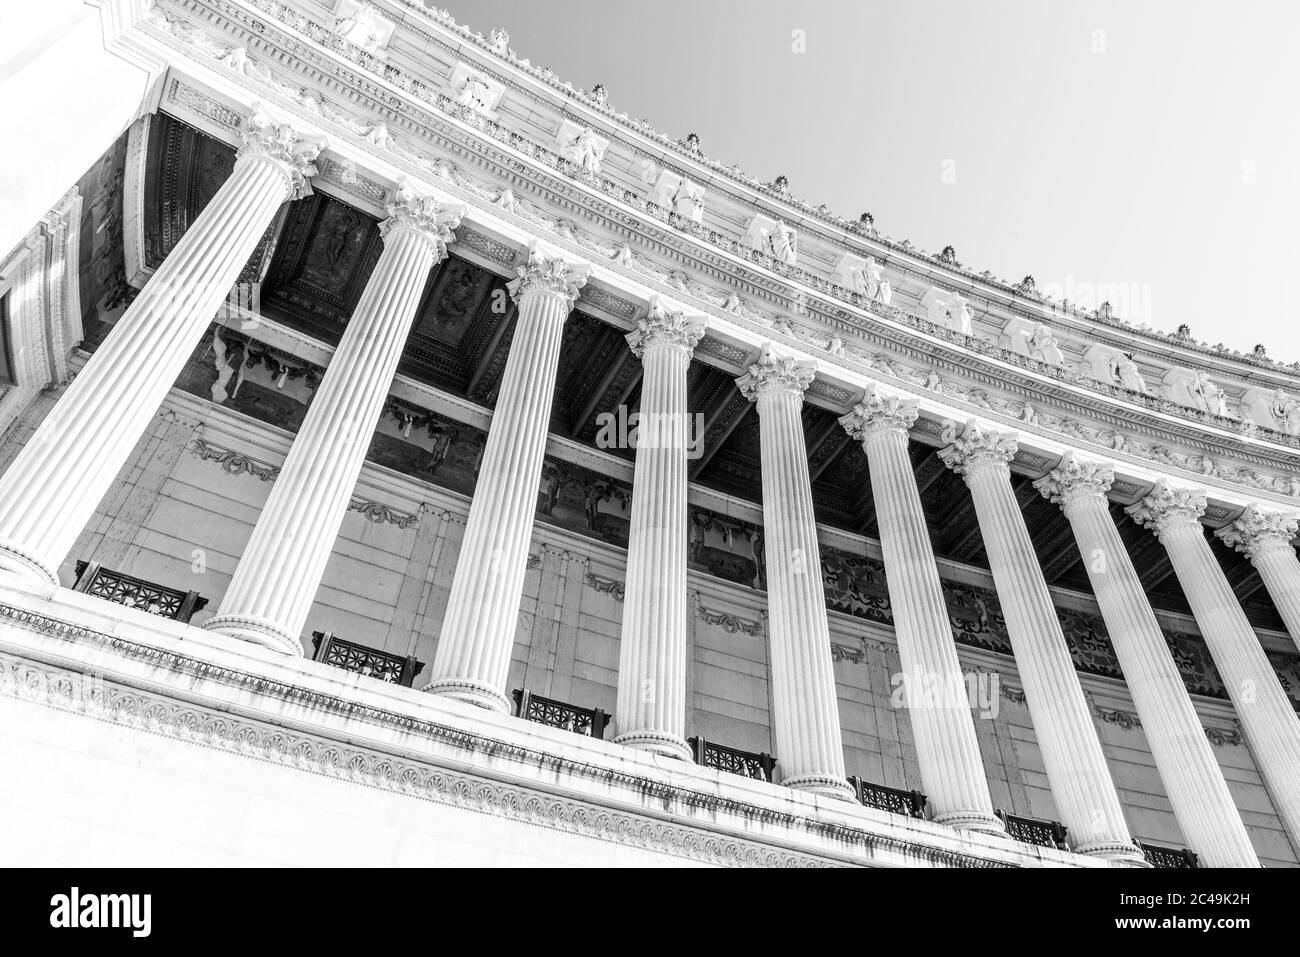 Détail architectural des colonnes du monument Vittorio Emanuele II, alias Vittoriano ou Altare della Patria. Rome, Italie. Image en noir et blanc. Banque D'Images